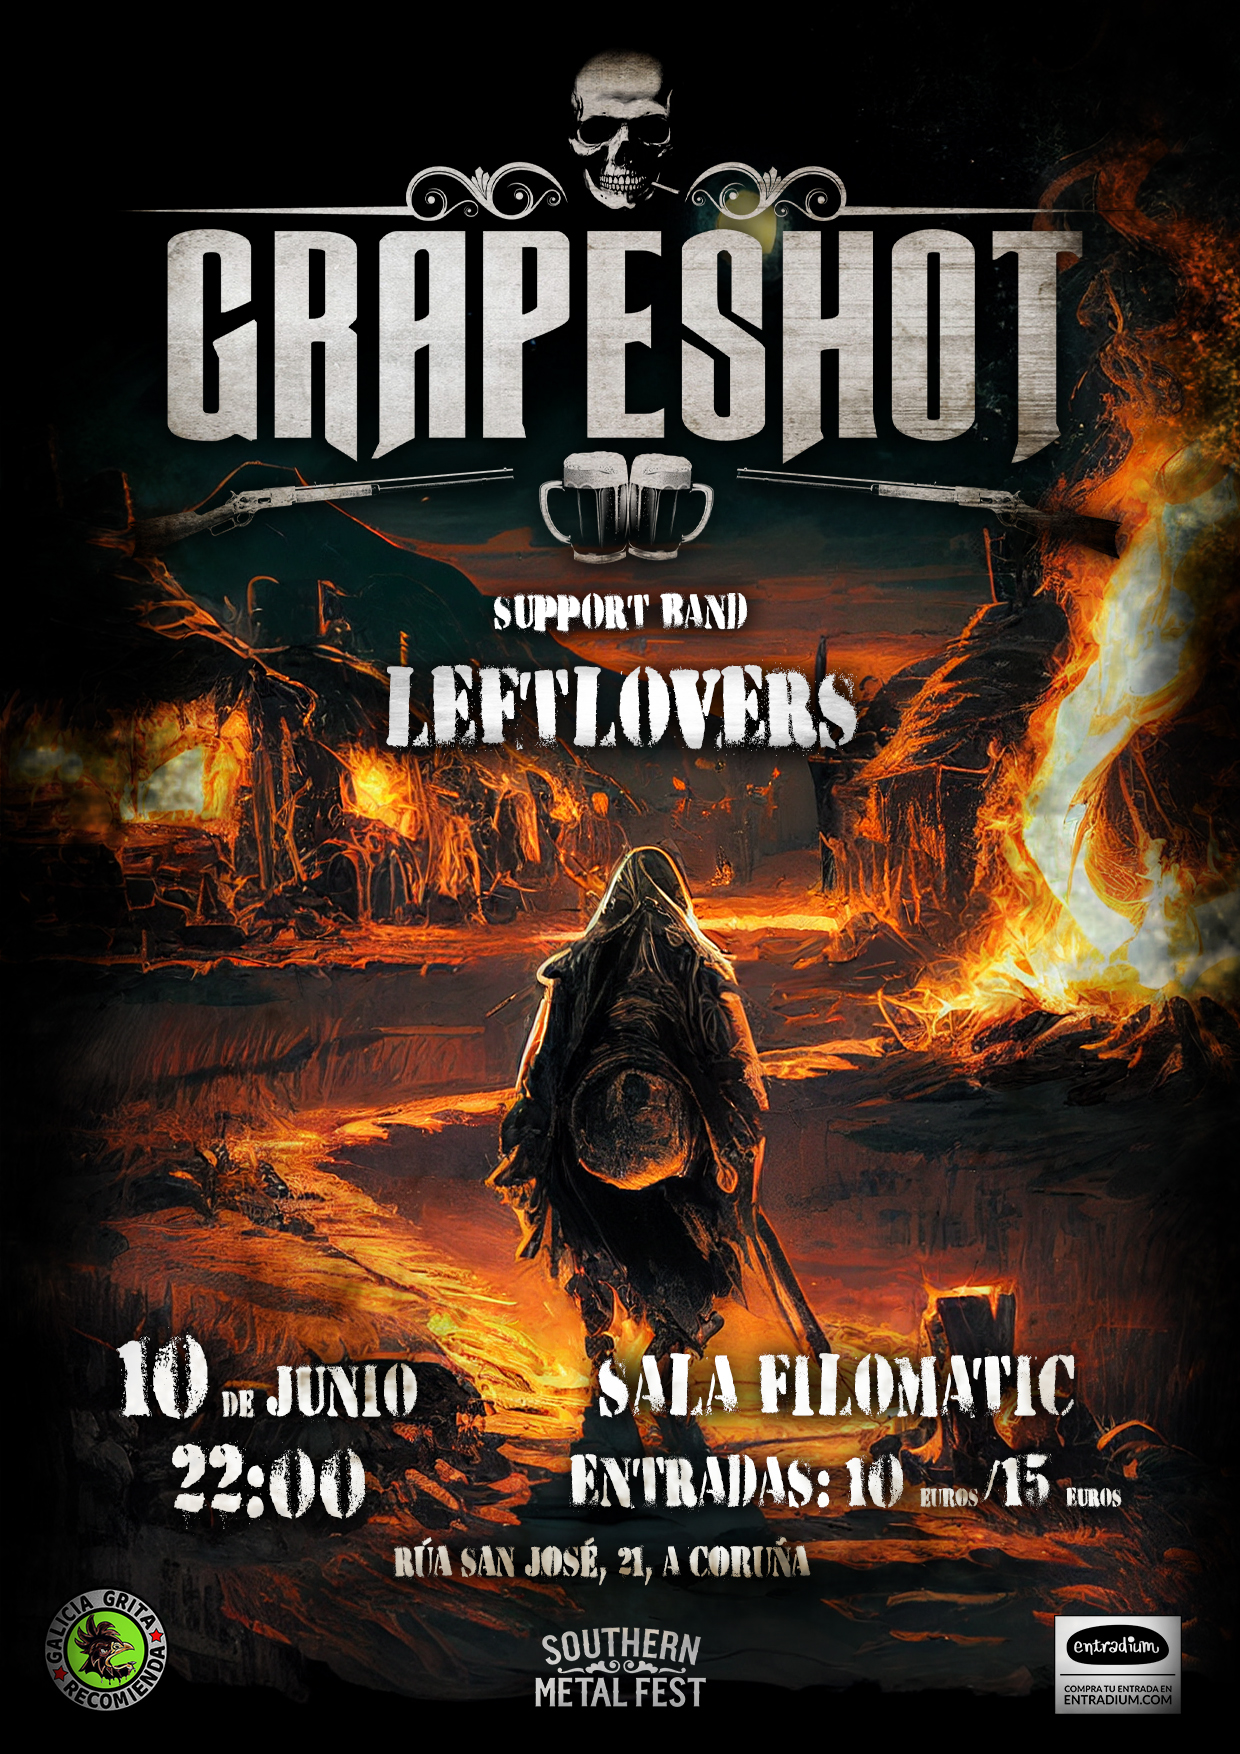 Grapeshot estarán actuando junto a Leftlovers el 10 de junio en A Coruña